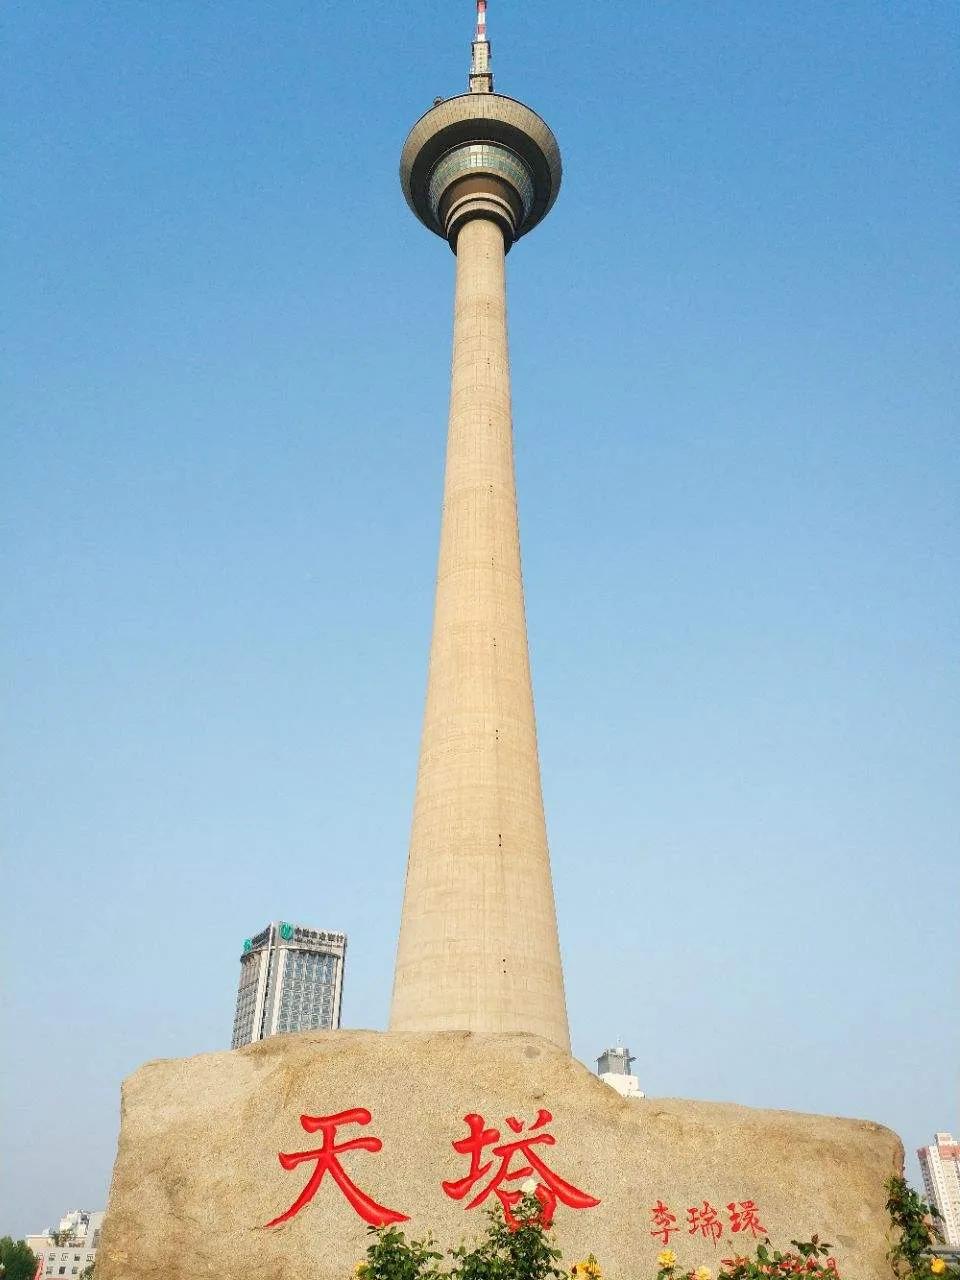 15 图片来源:@百度图片 世界上唯一一座"水中之塔"就是天津著名的建筑